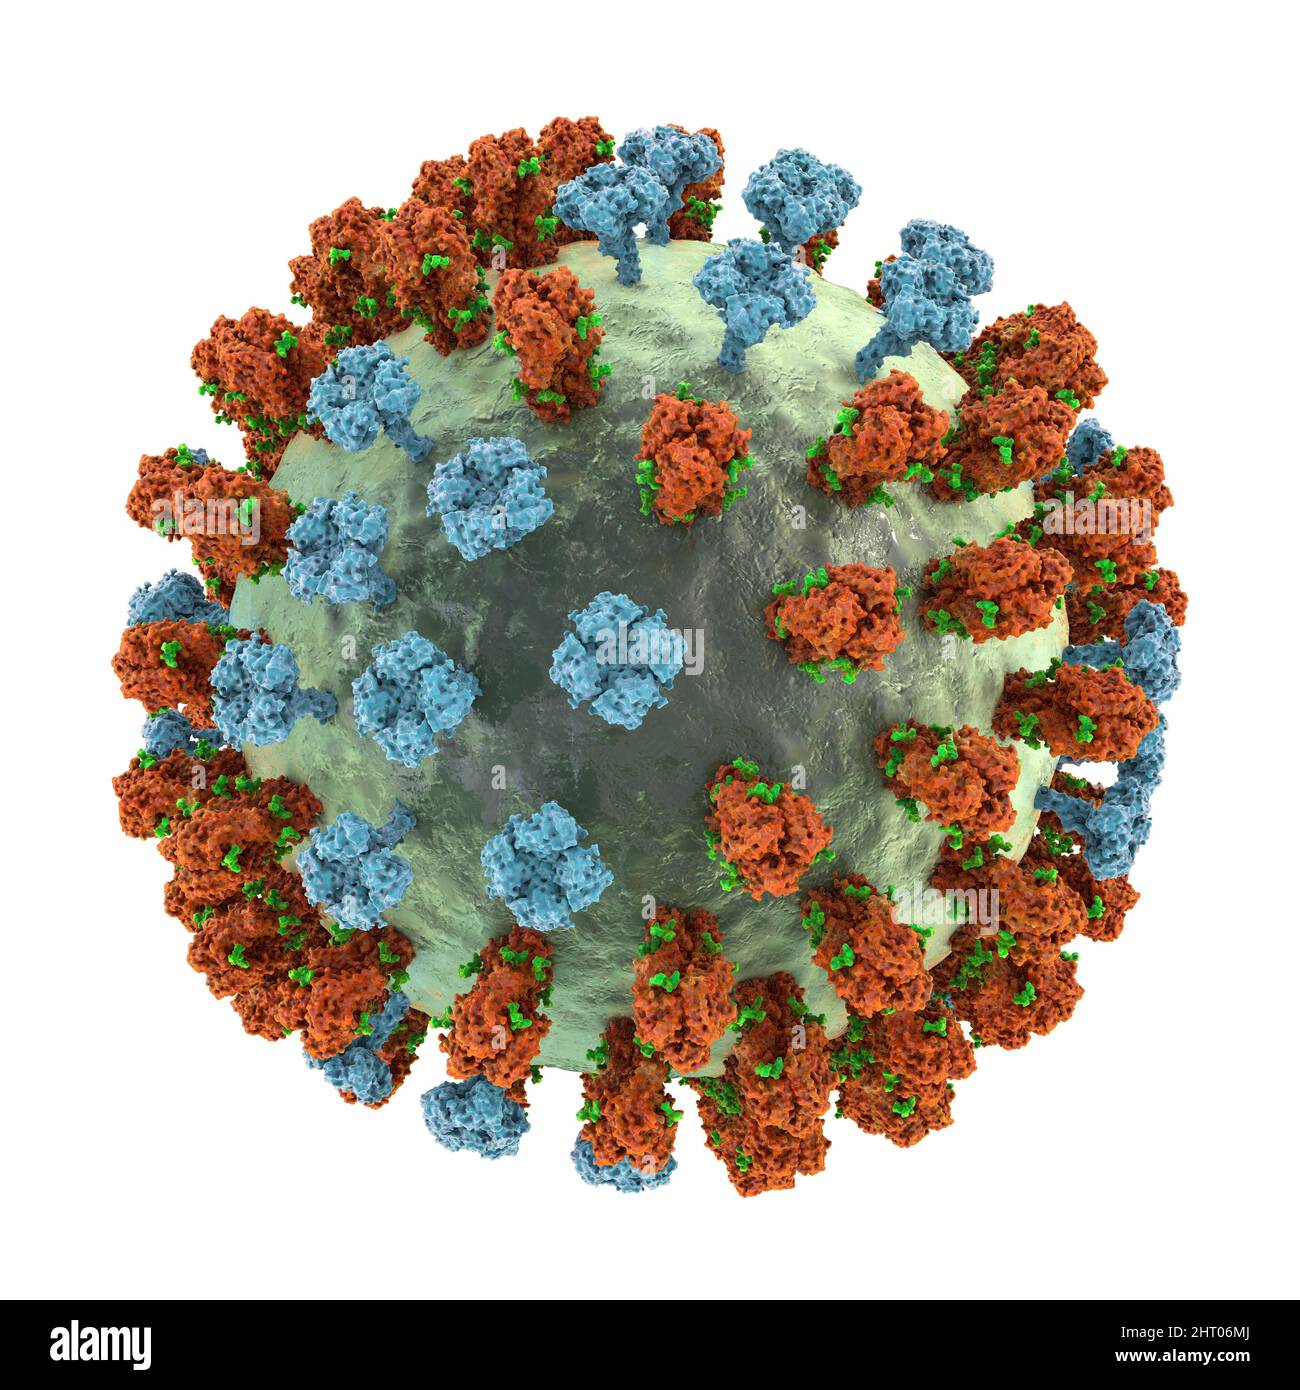 Grippevirus, Abbildung Stockfoto